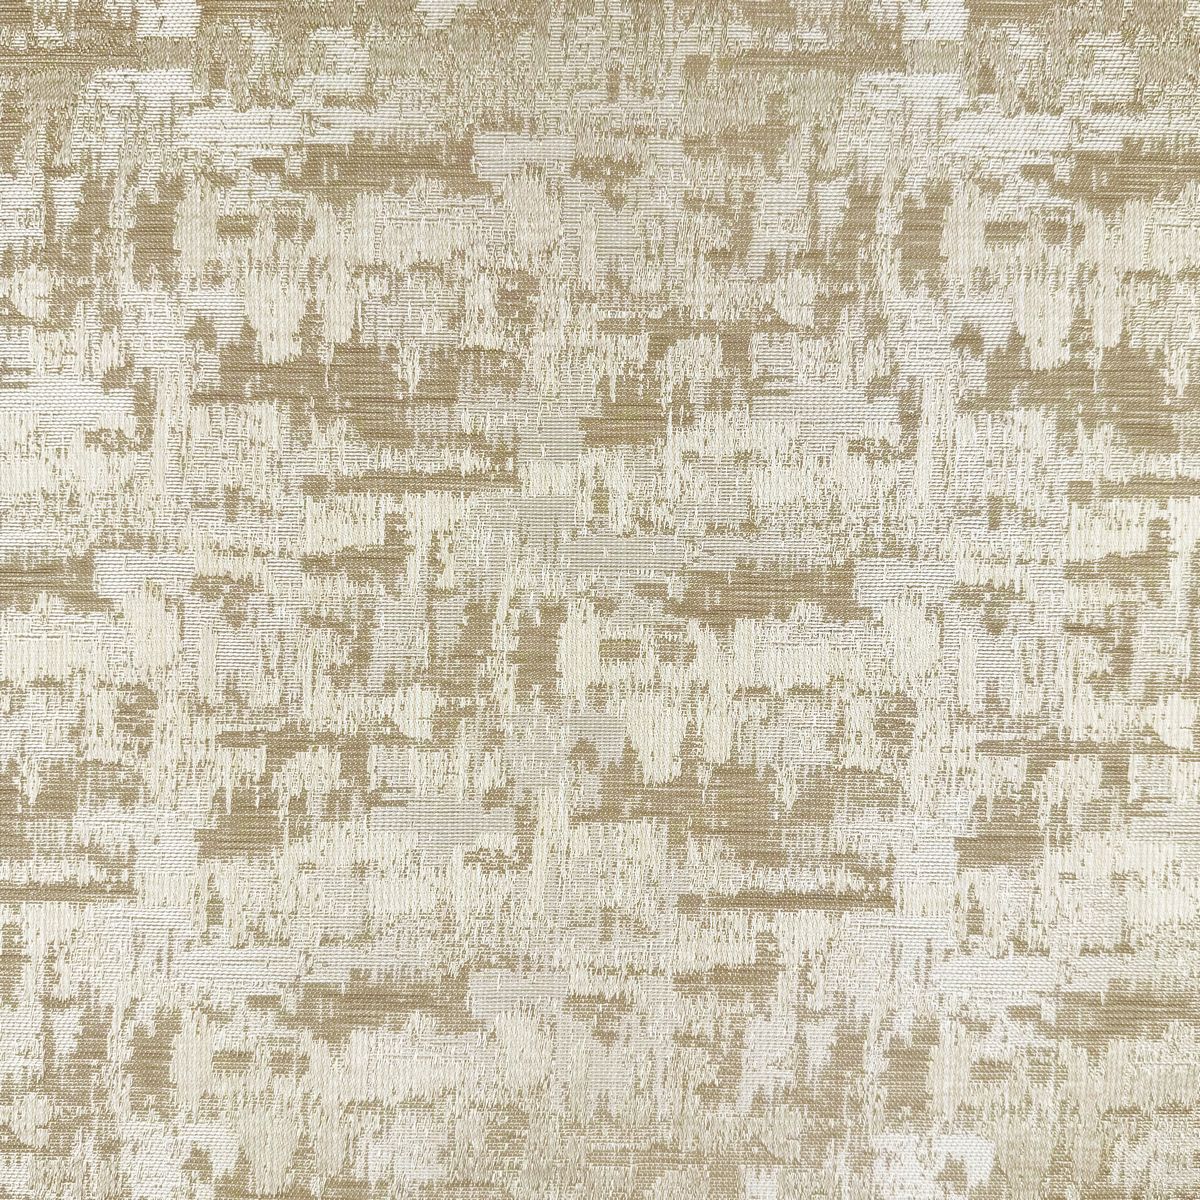 Cranbourne Mocha Fabric by Chatham Glyn